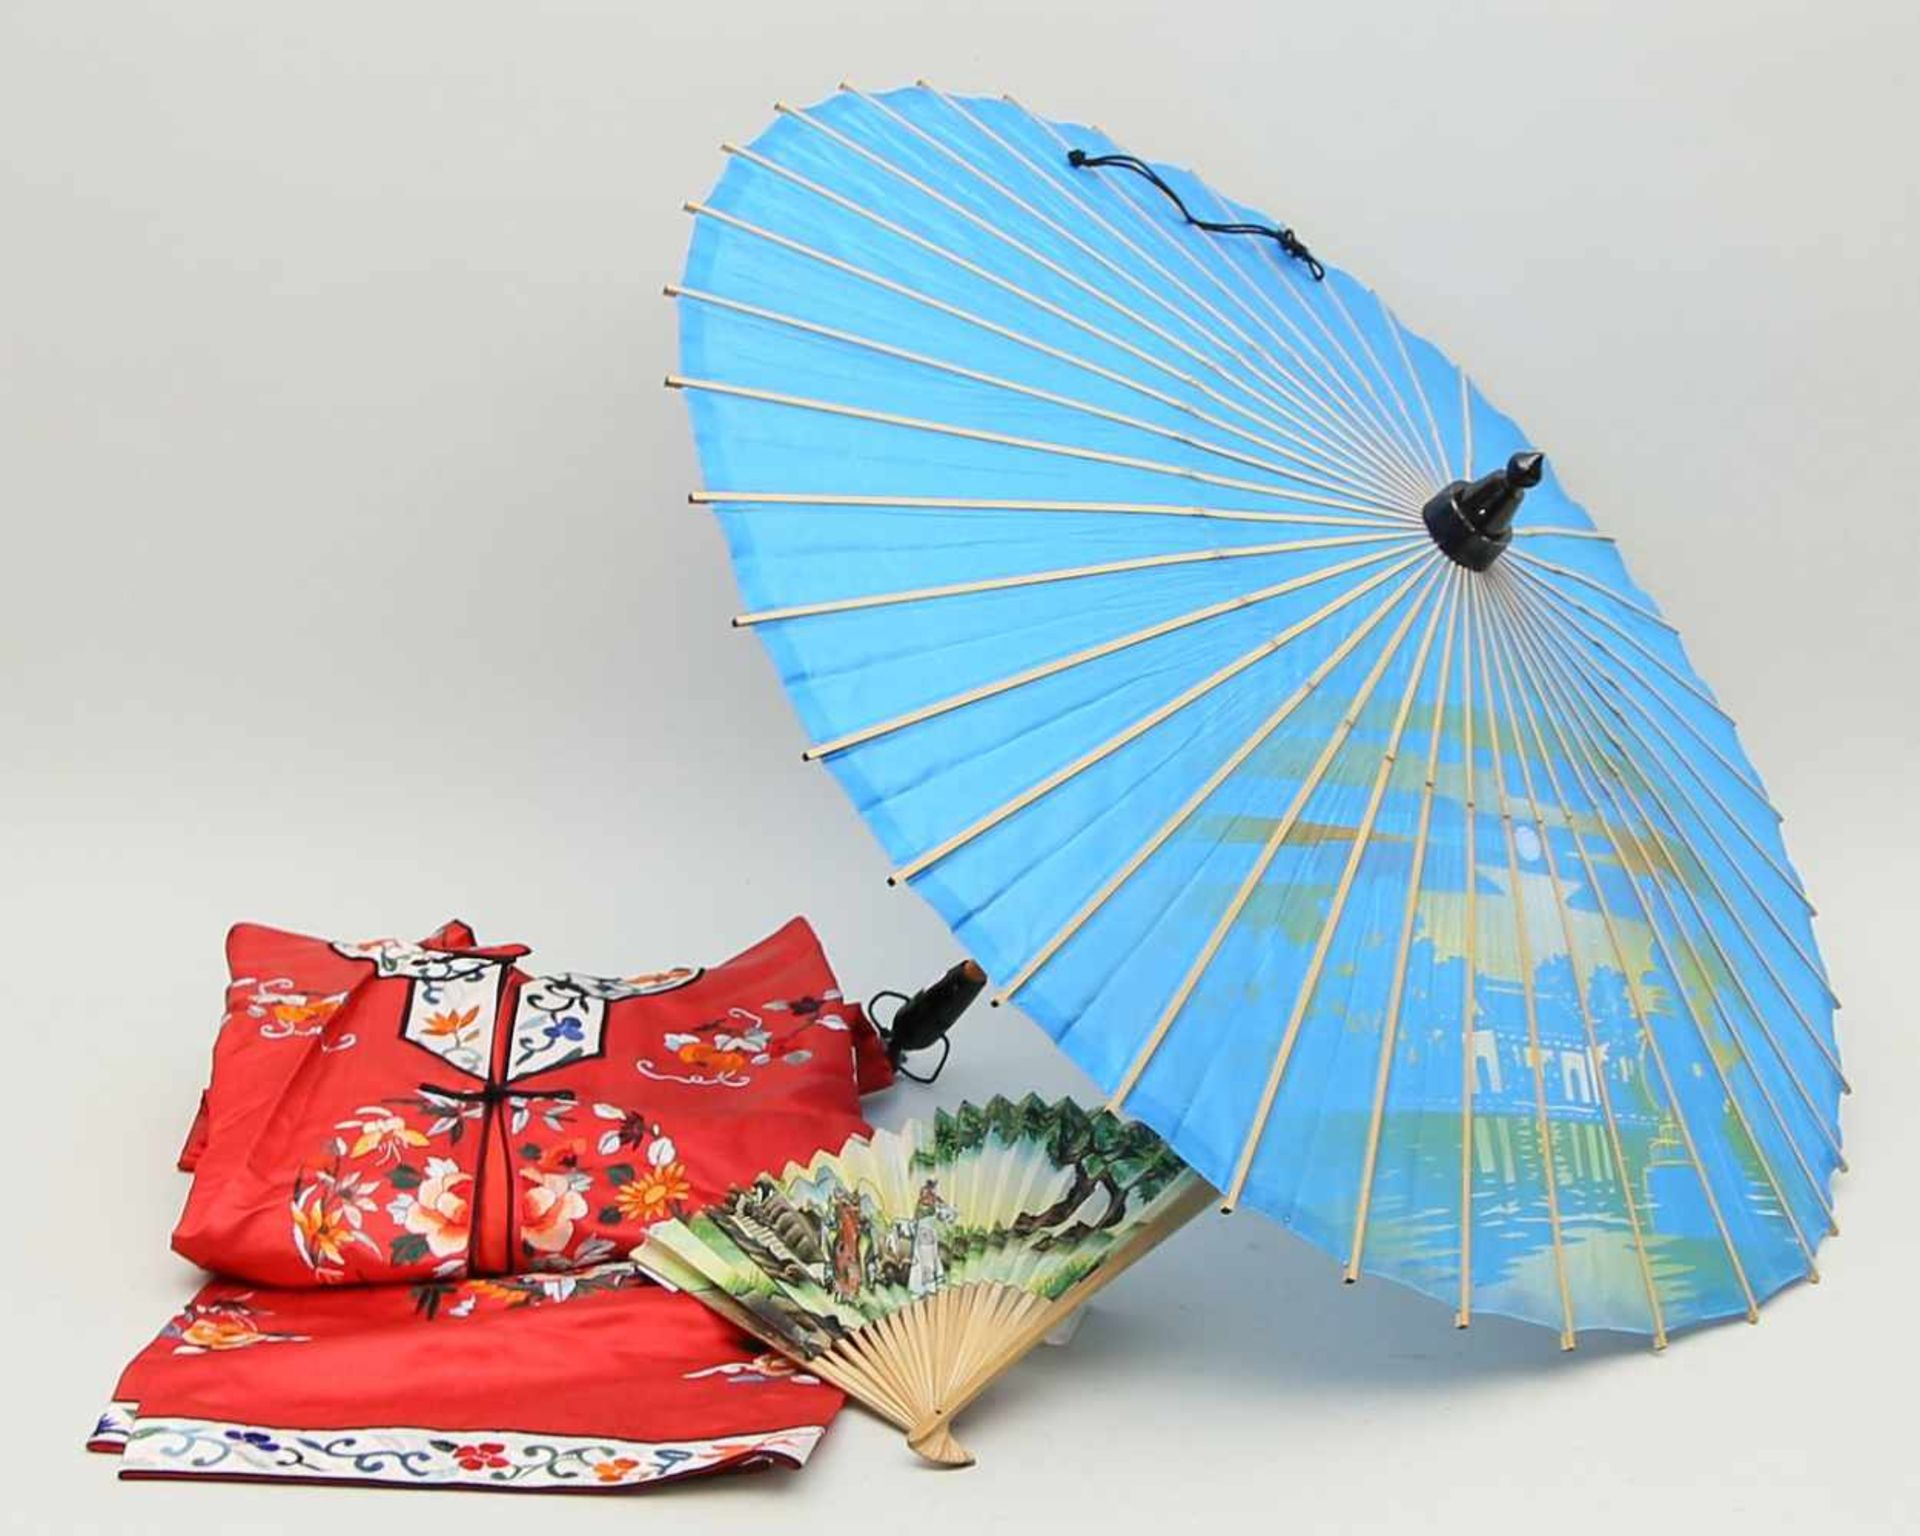 Bestickter Seidenanzug, Sonnenschirm und Fächer.Verschiedene Materialien und Ausführungen. China.